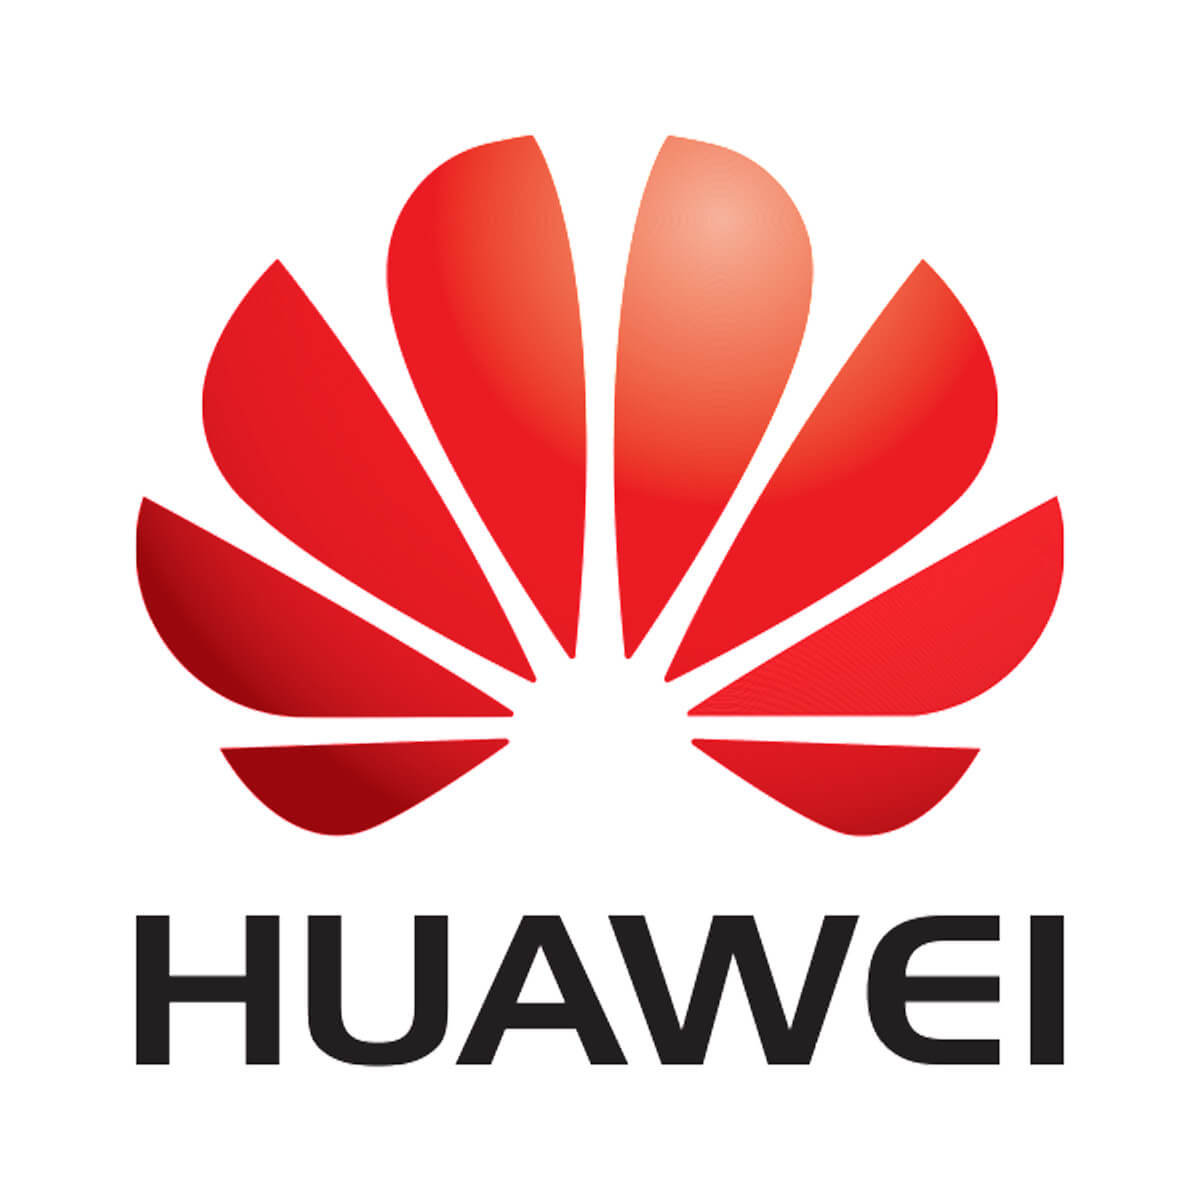 Huawei windows 10 updates